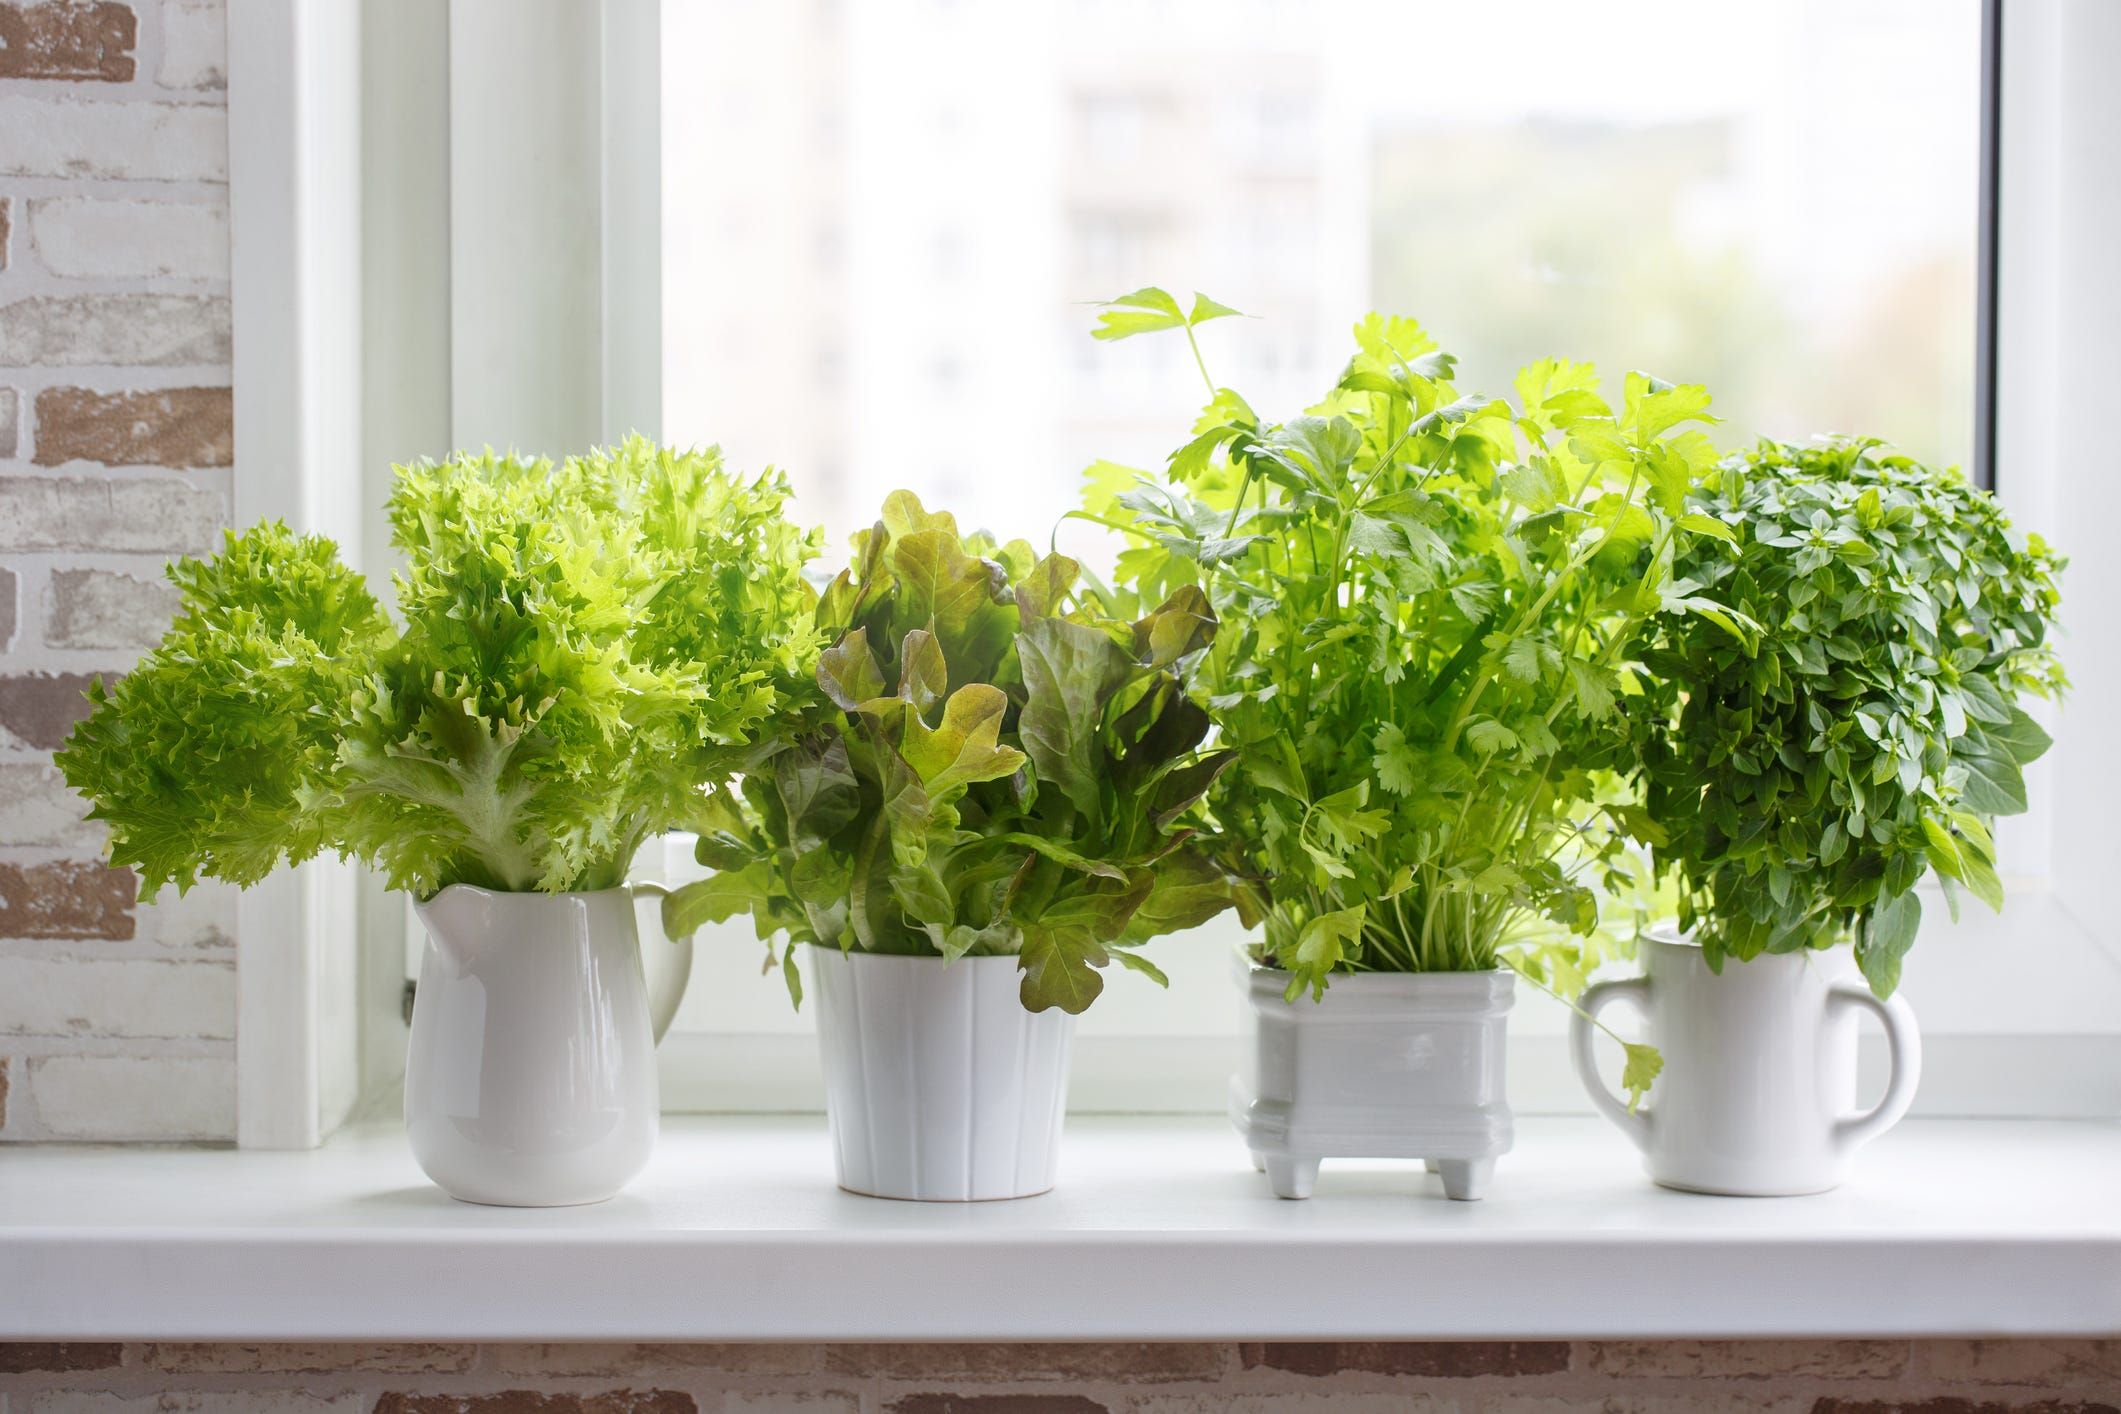 17 Indoor Herb Garden Ideas 2022, Images Of Potted Herb Gardens